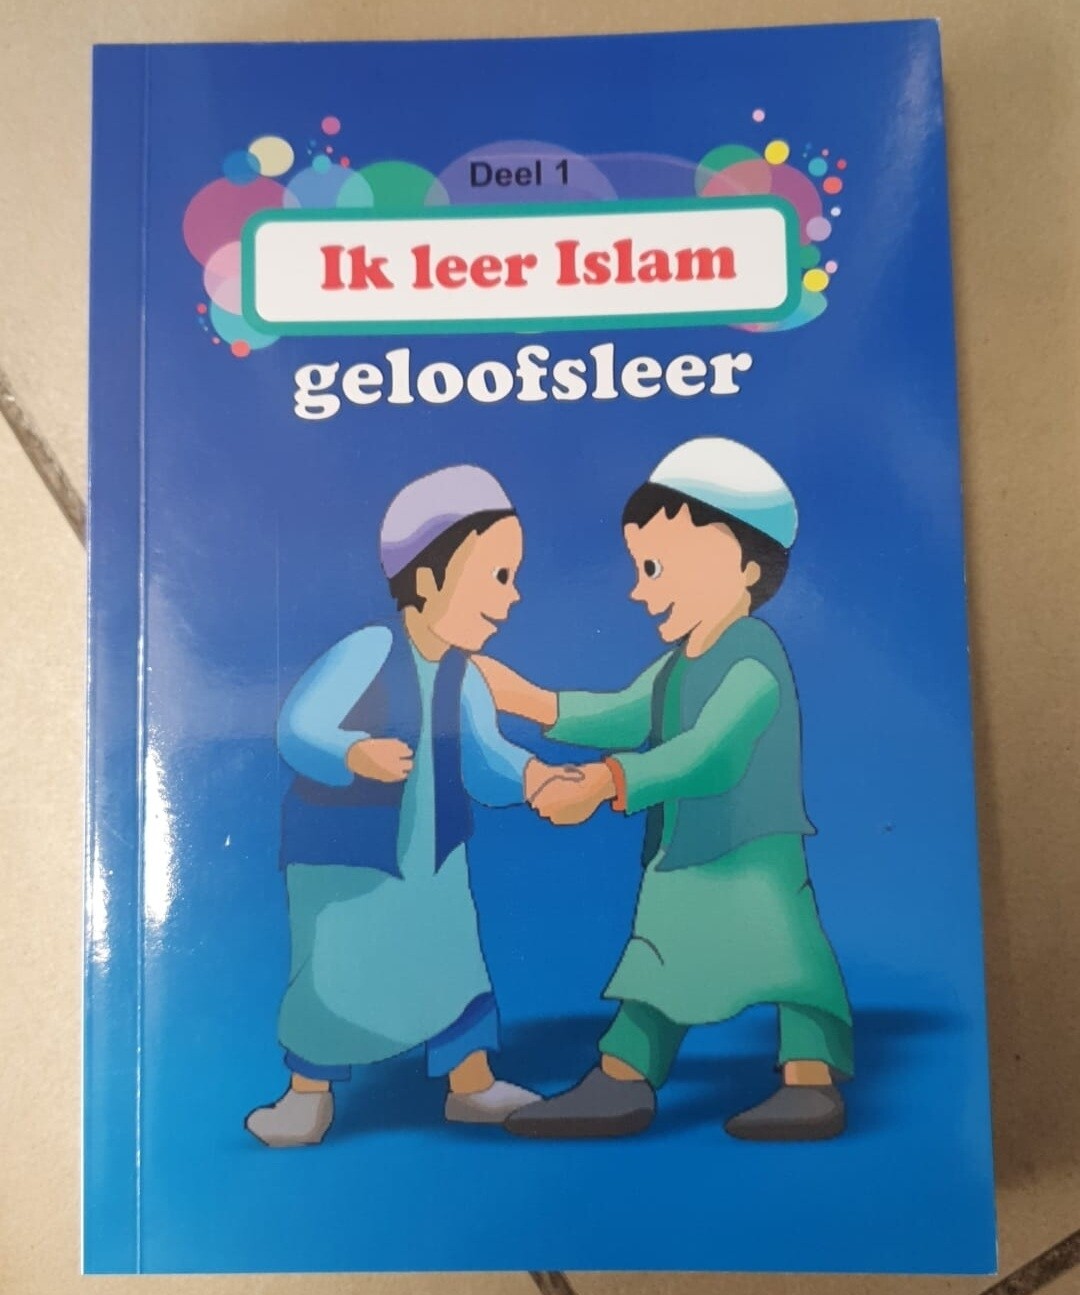 Ik leer islam: Geloofsleer